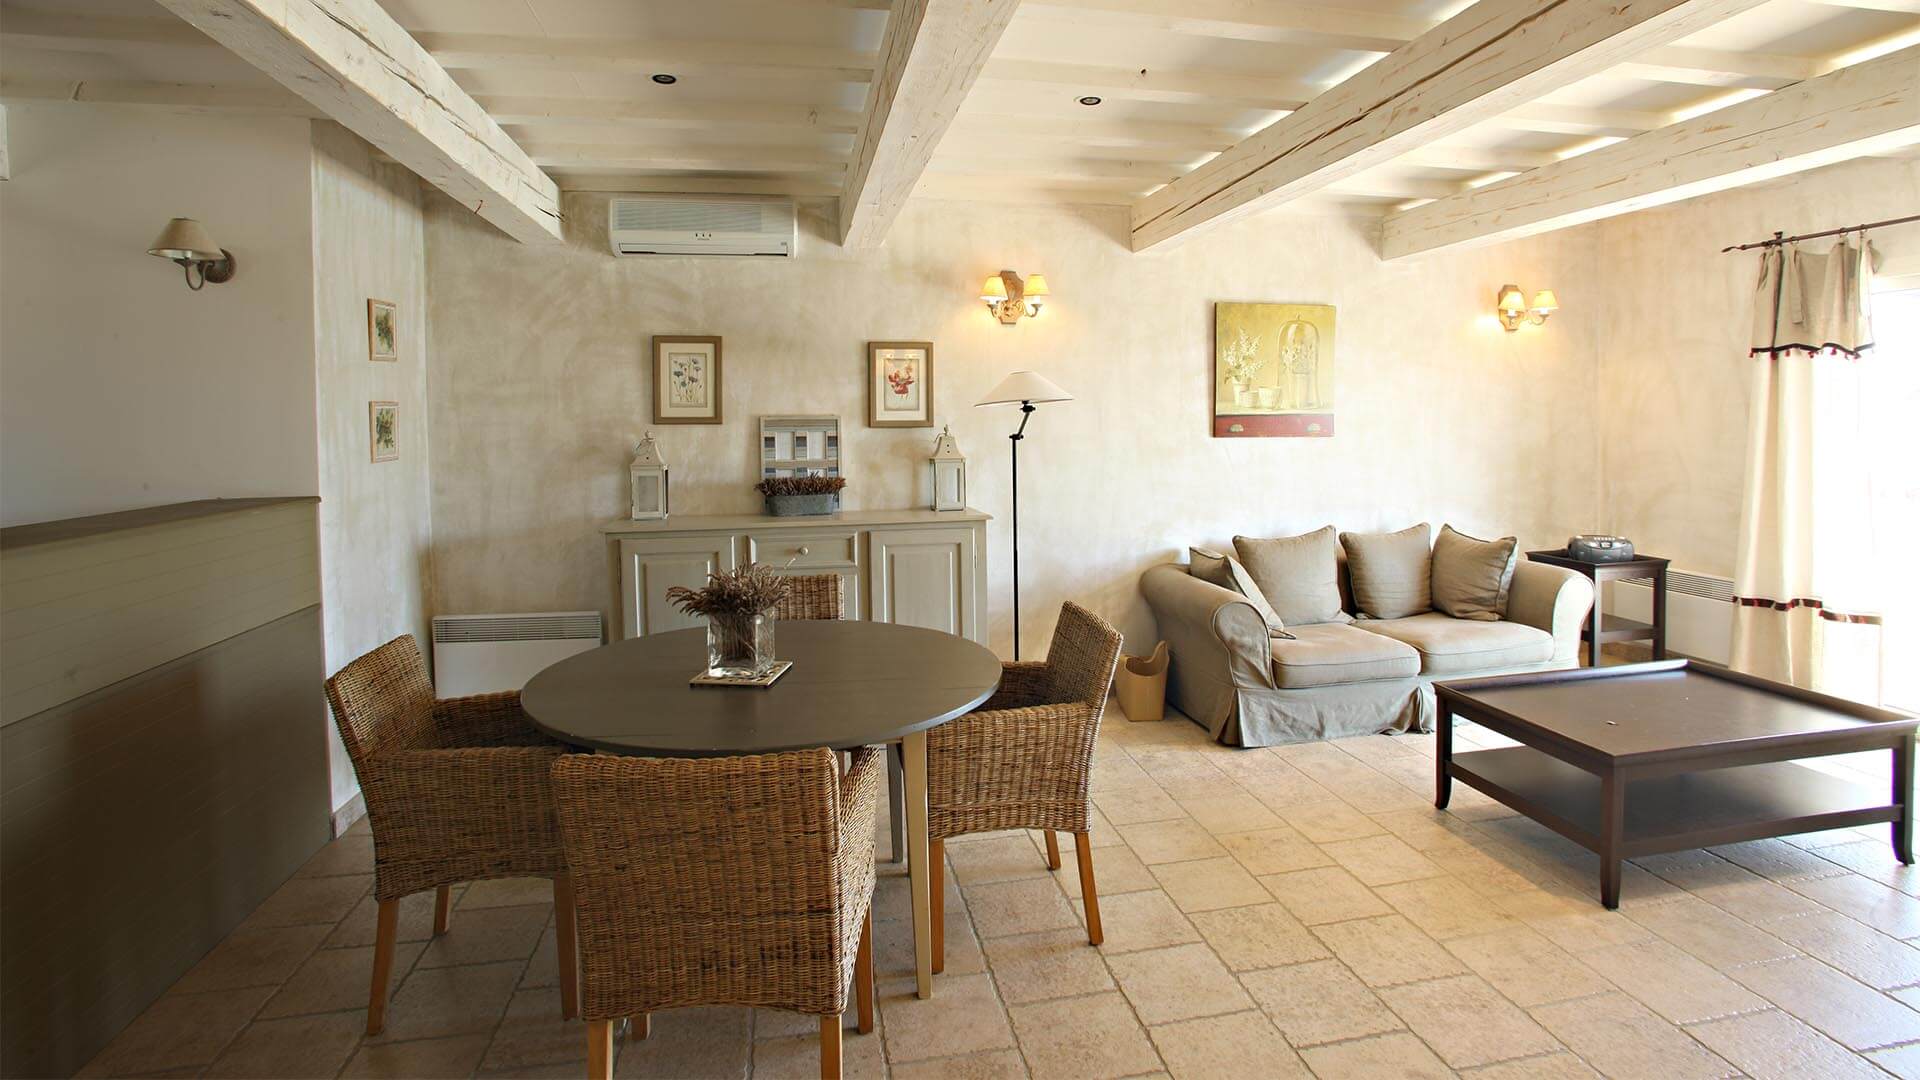 Location vacances particulier Alpes de Haute-Provence | Villa terre d'ombre | Salon, salle à manger